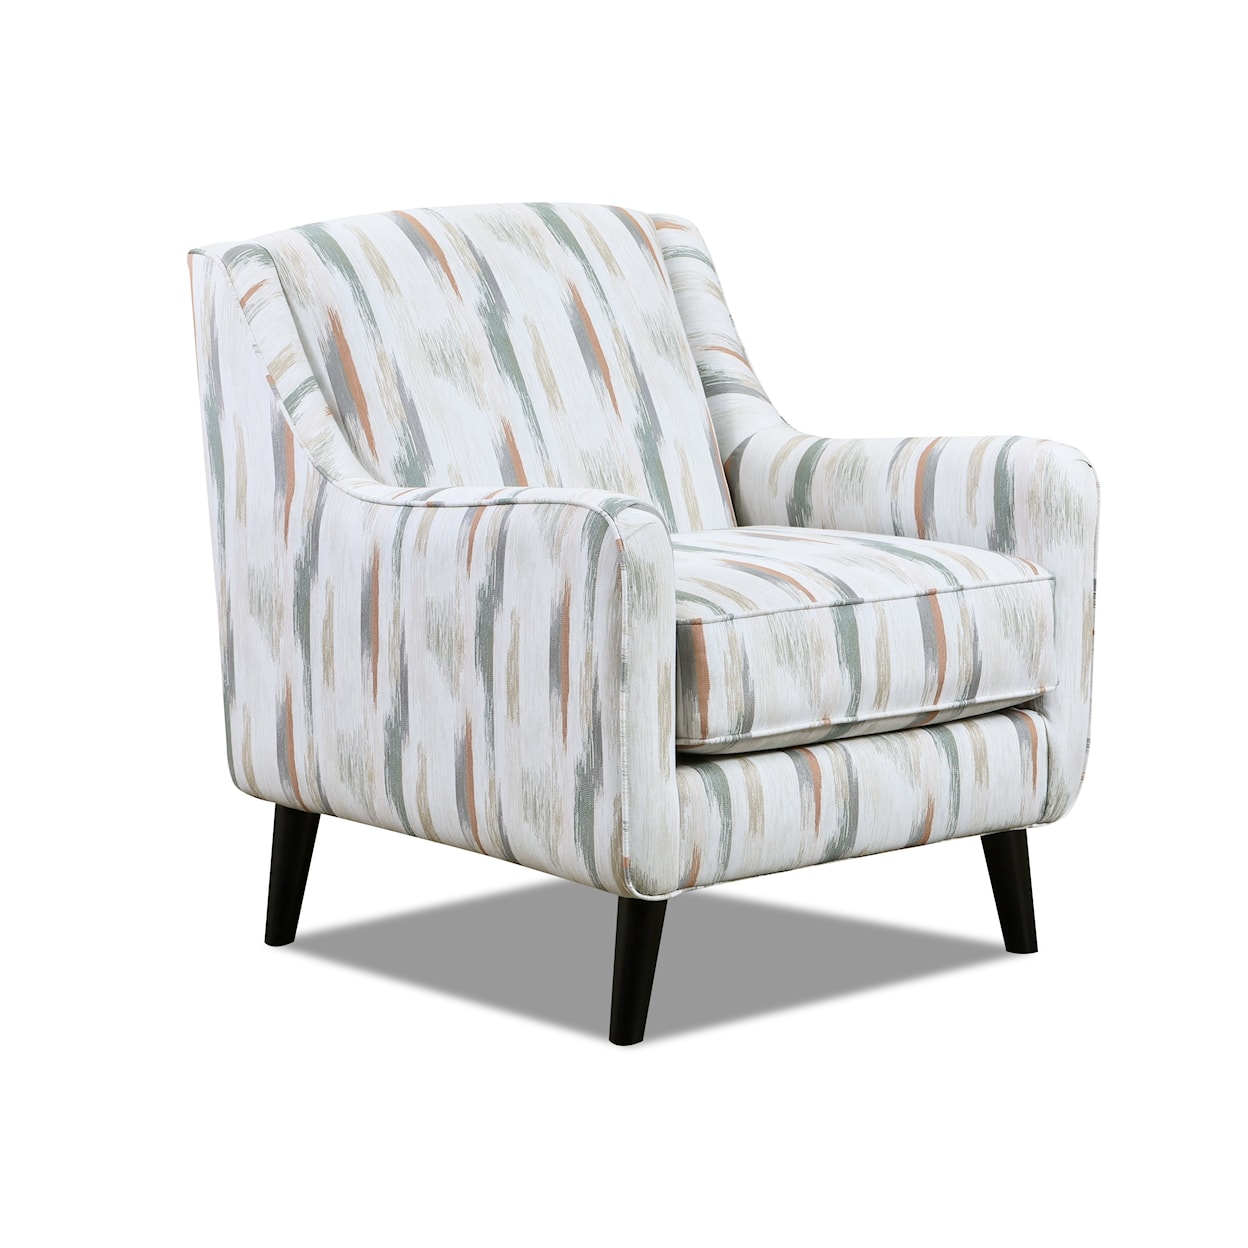 Fusion Furniture 7003 CHARLOTTE CREMINI Accent Chair